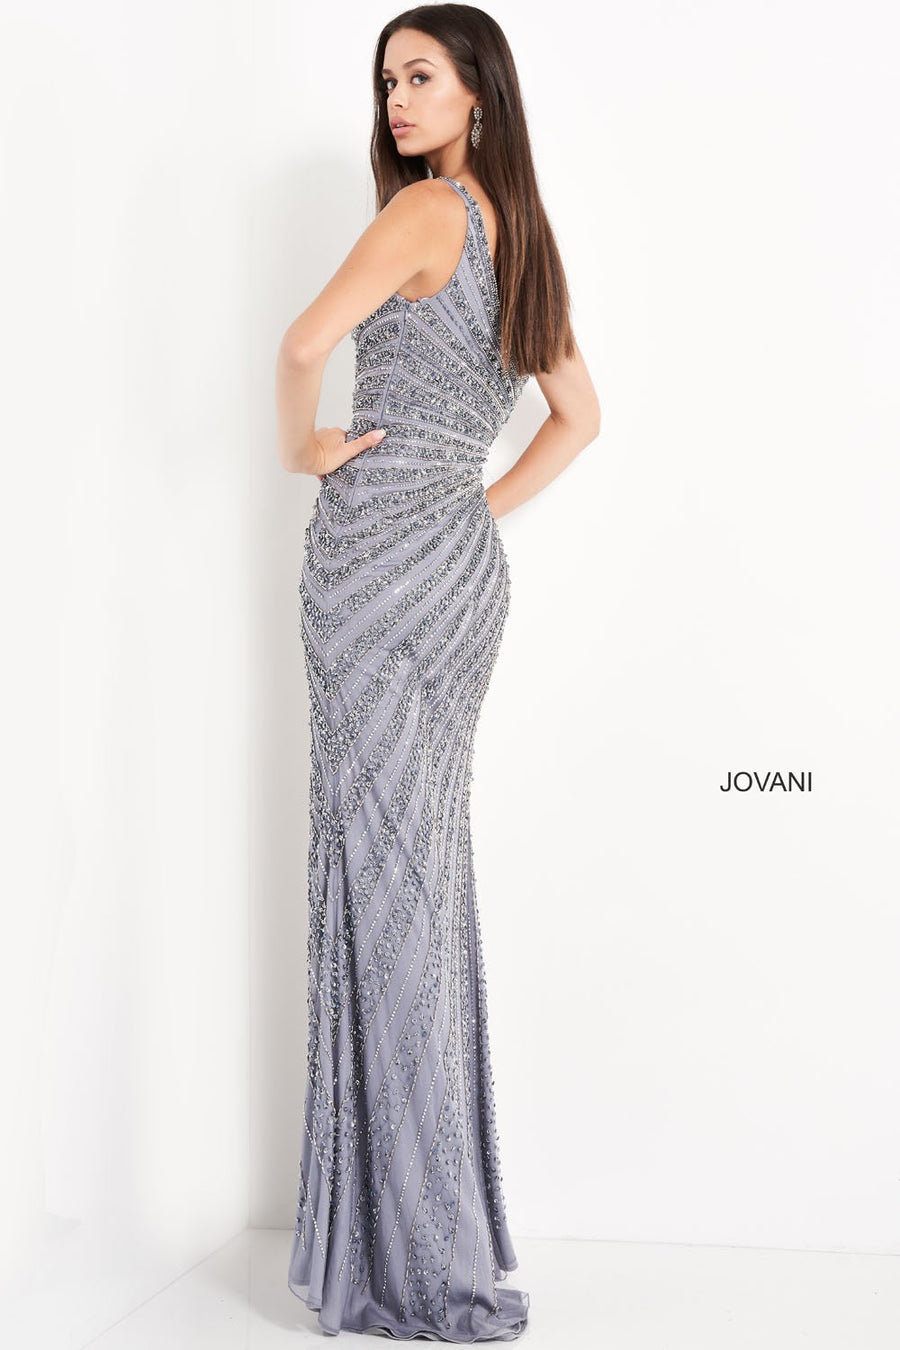 Jovani 04539 Dresses